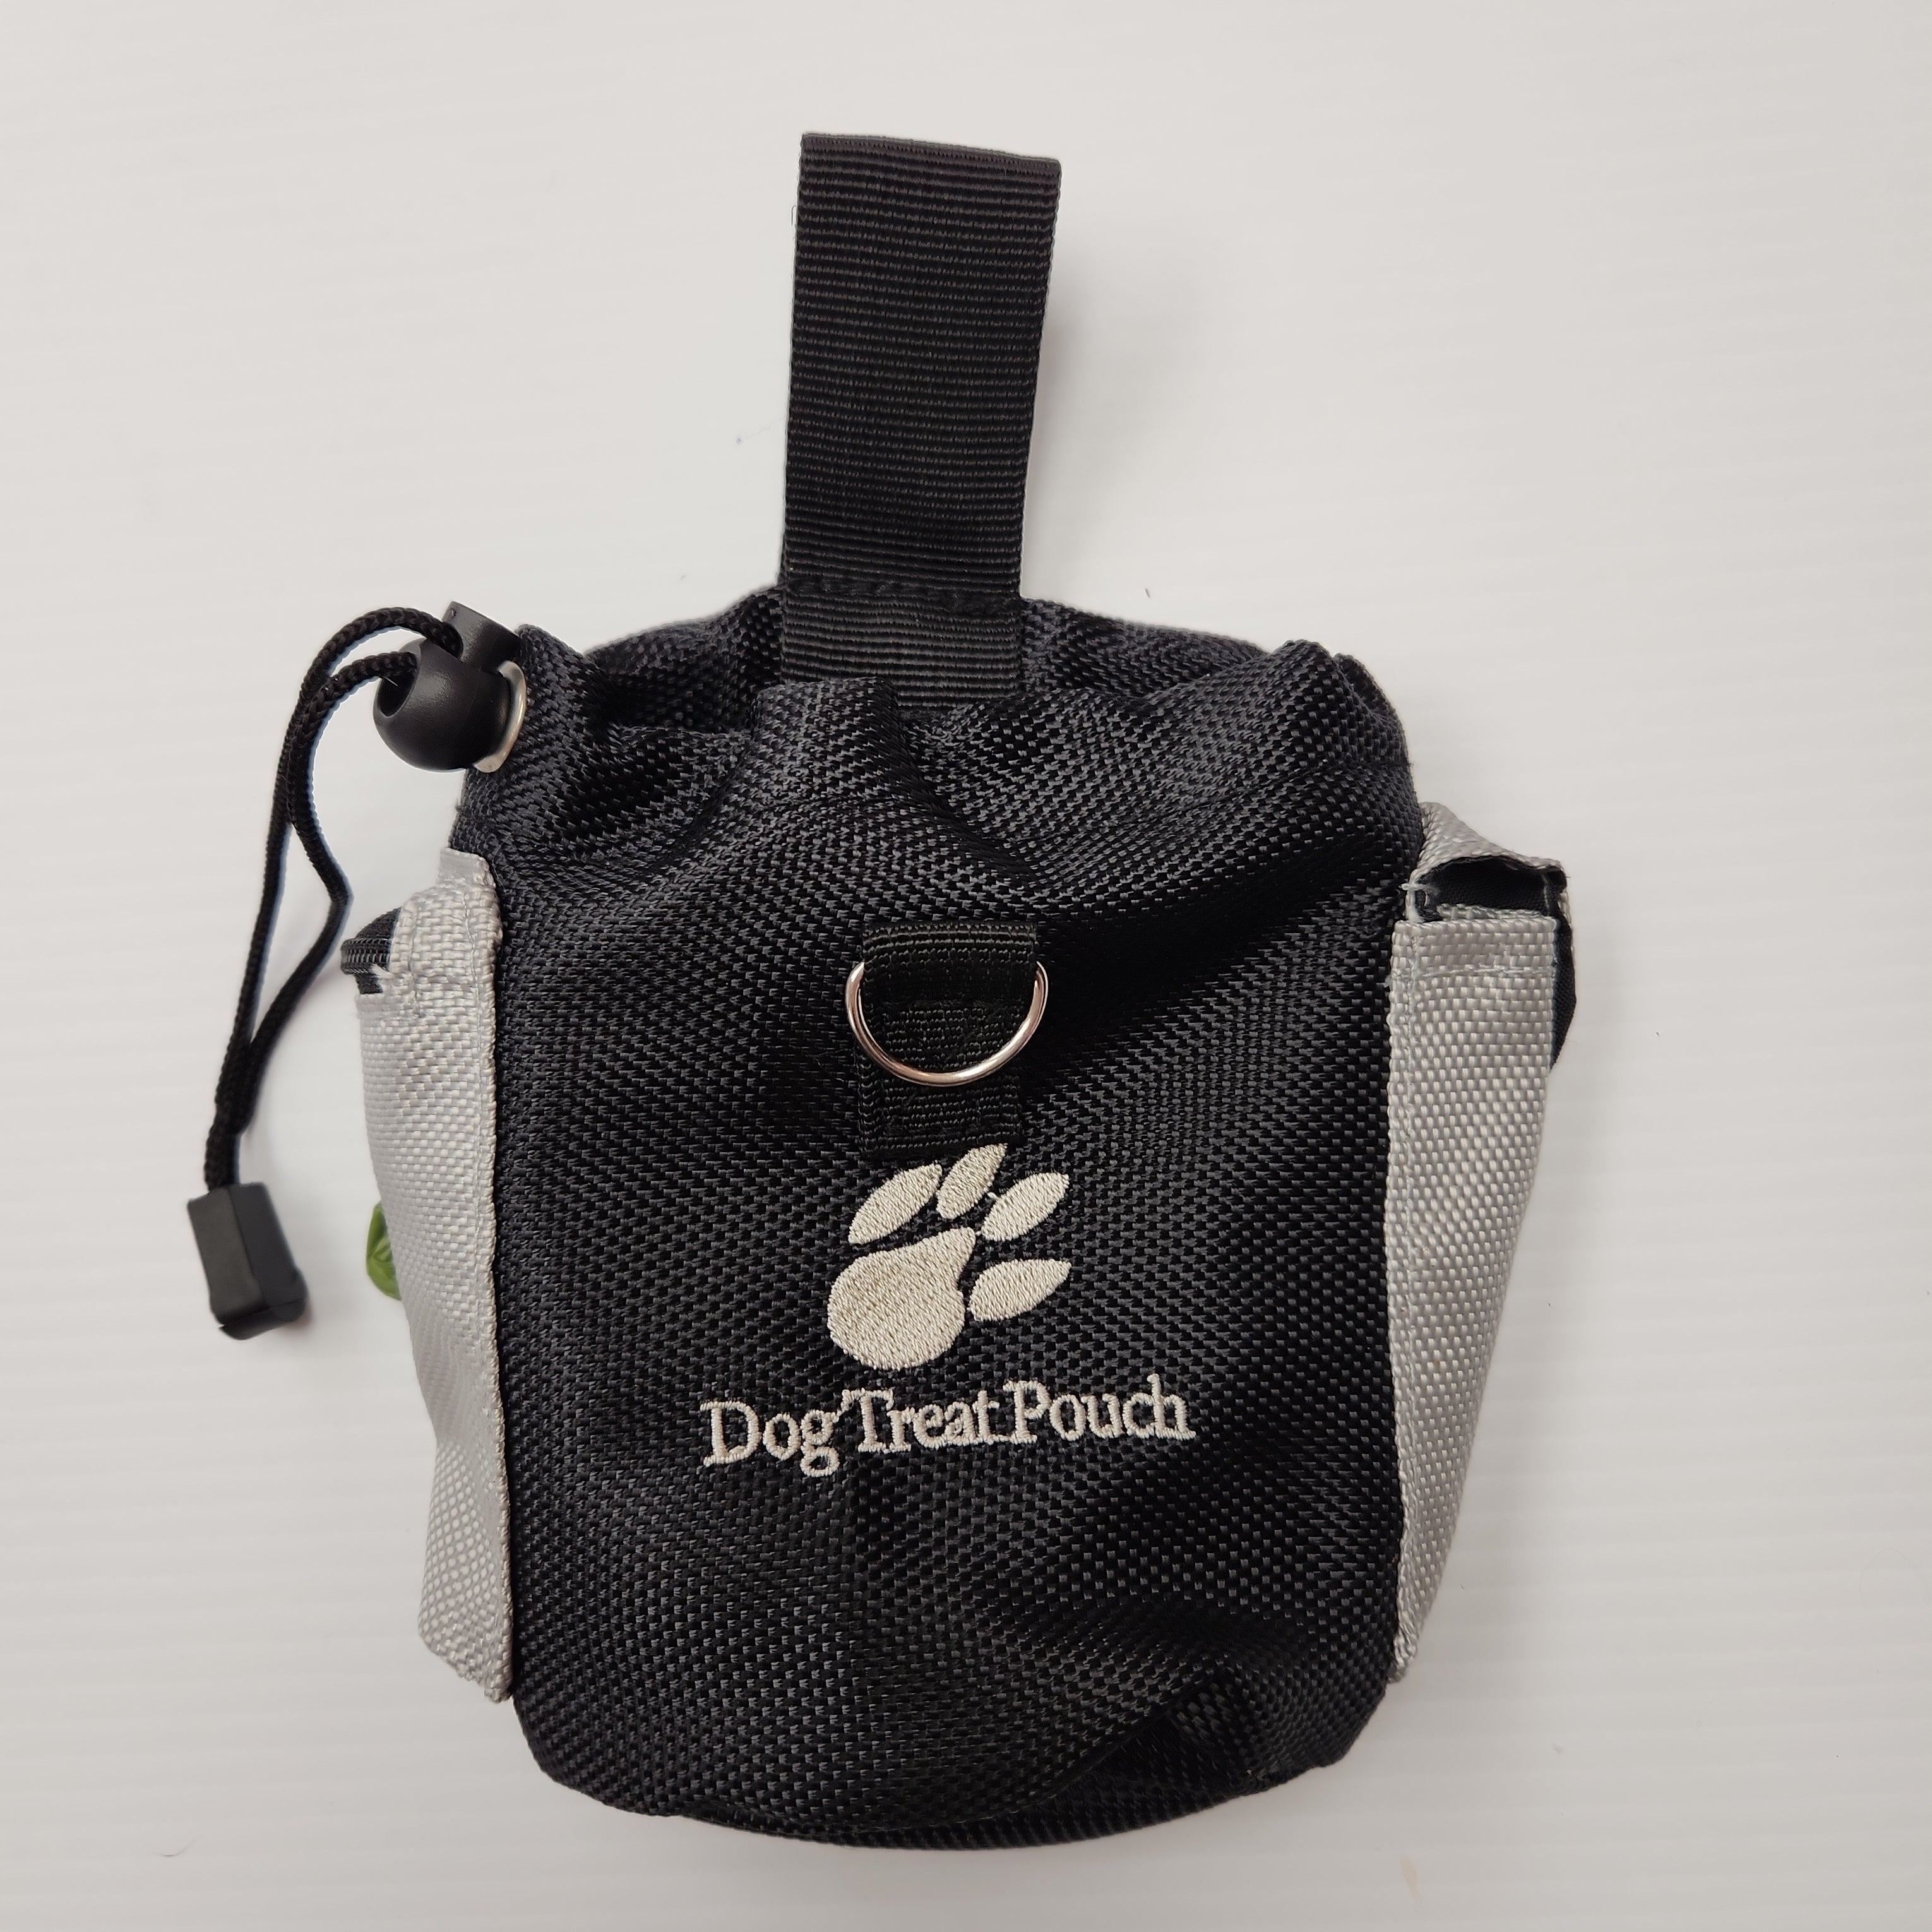 Treat Bag Pouch with Key Pocket, Poop Bag Dispenser, 15 Poop Bags Hooks on Belt or Pockets